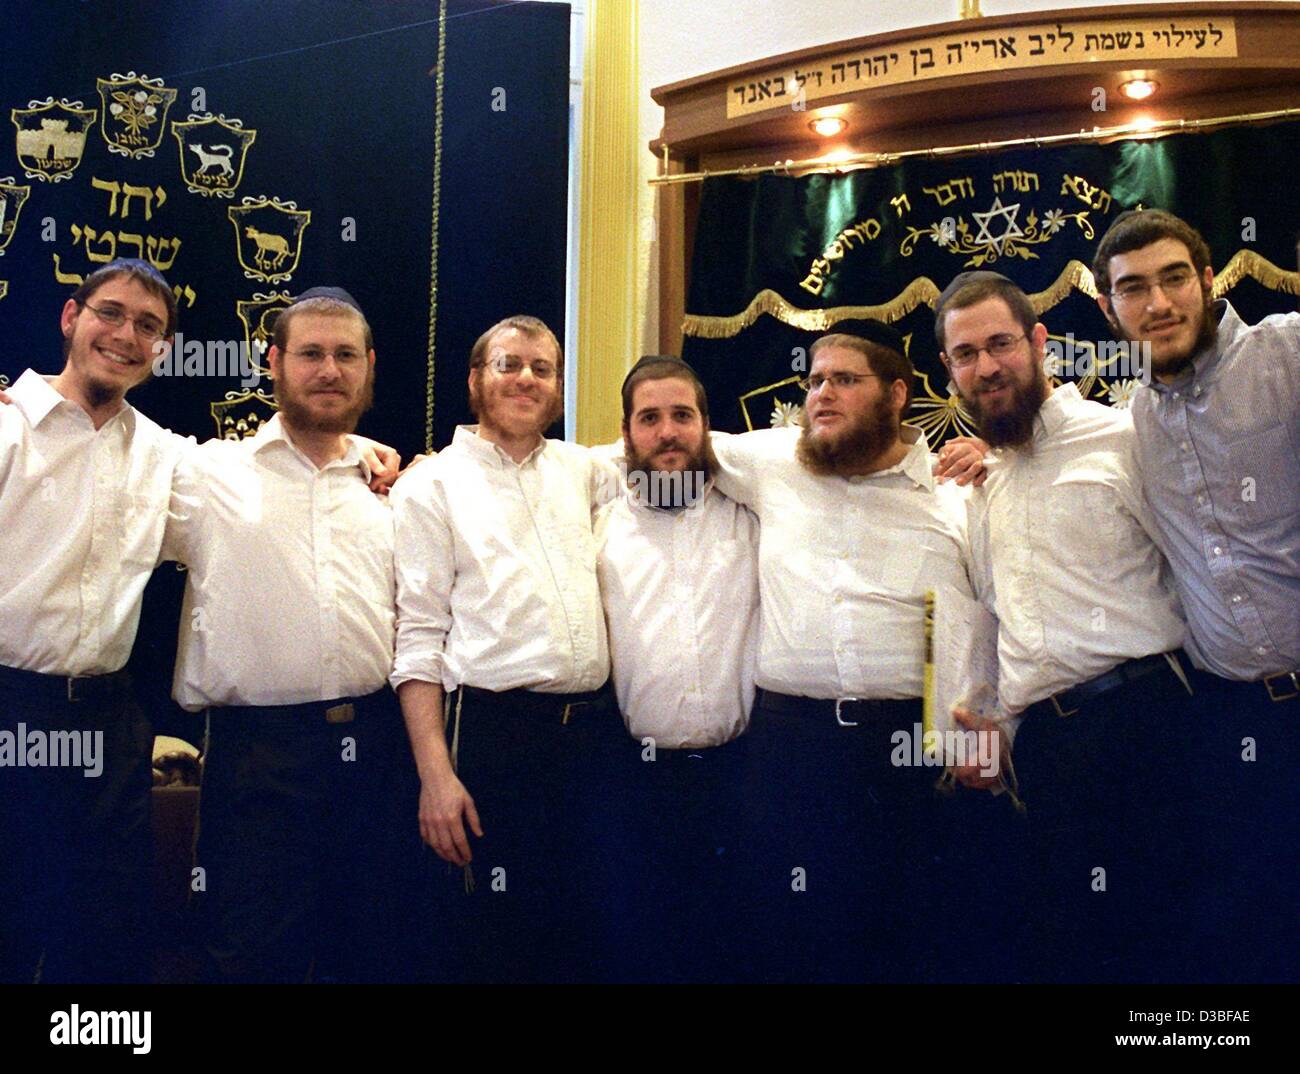 (Dpa) - die Absolventen der jüdischen religiösen College Jesshiva feiern ihre Diplome in Berlin, 22. Juni 2003. Nach einem zweijährigen Kurs nahmen junge Juden aus verschiedenen Ländern die Abschlussprüfungen, Rabbiner zu werden. Das Kollegium wird betrieben von der orthodoxen jüdischen Organisation Chabad, die die Rabbiner zu erziehen Stockfoto